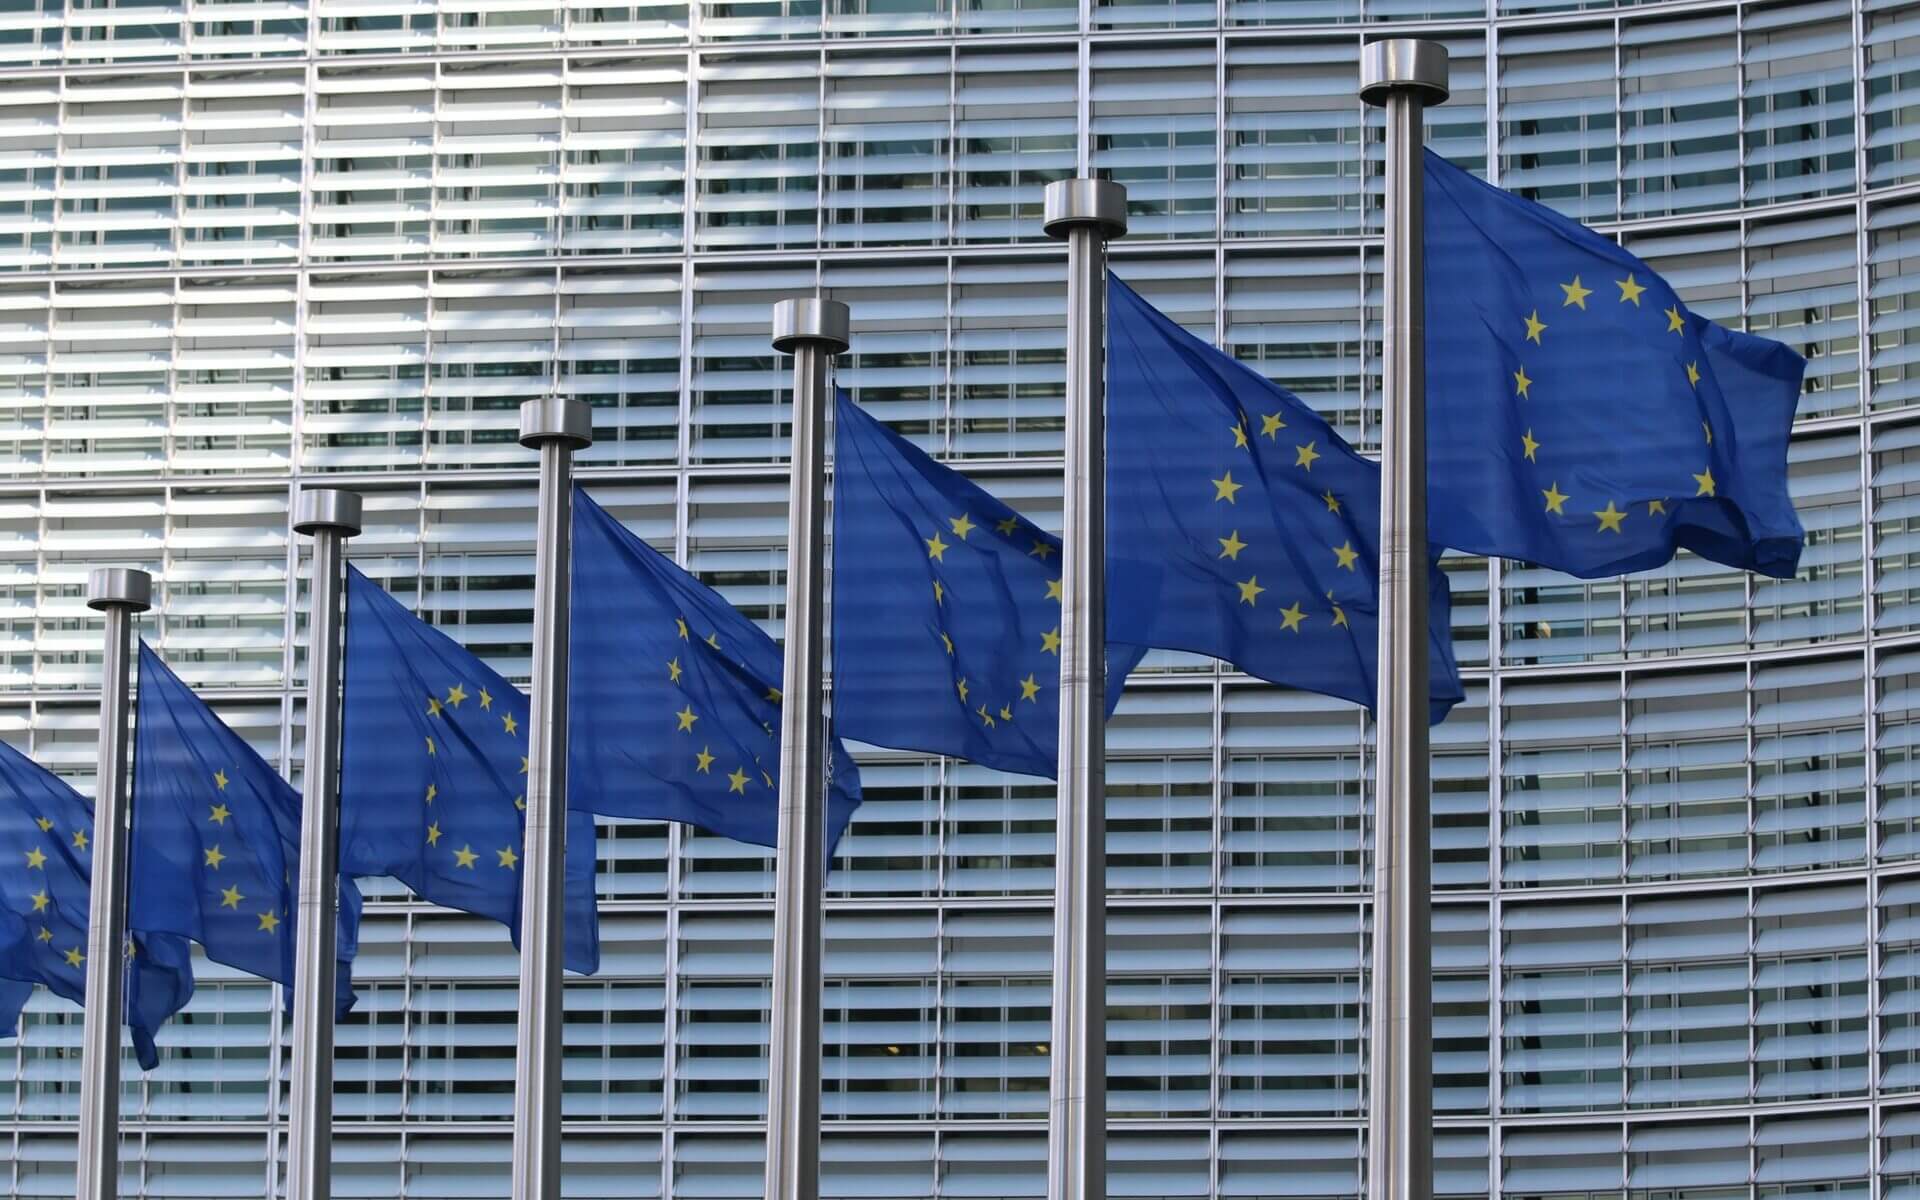 Seitsemän liehuvaa Euroopan unionin lippua harmaan rakennuksen edessä.